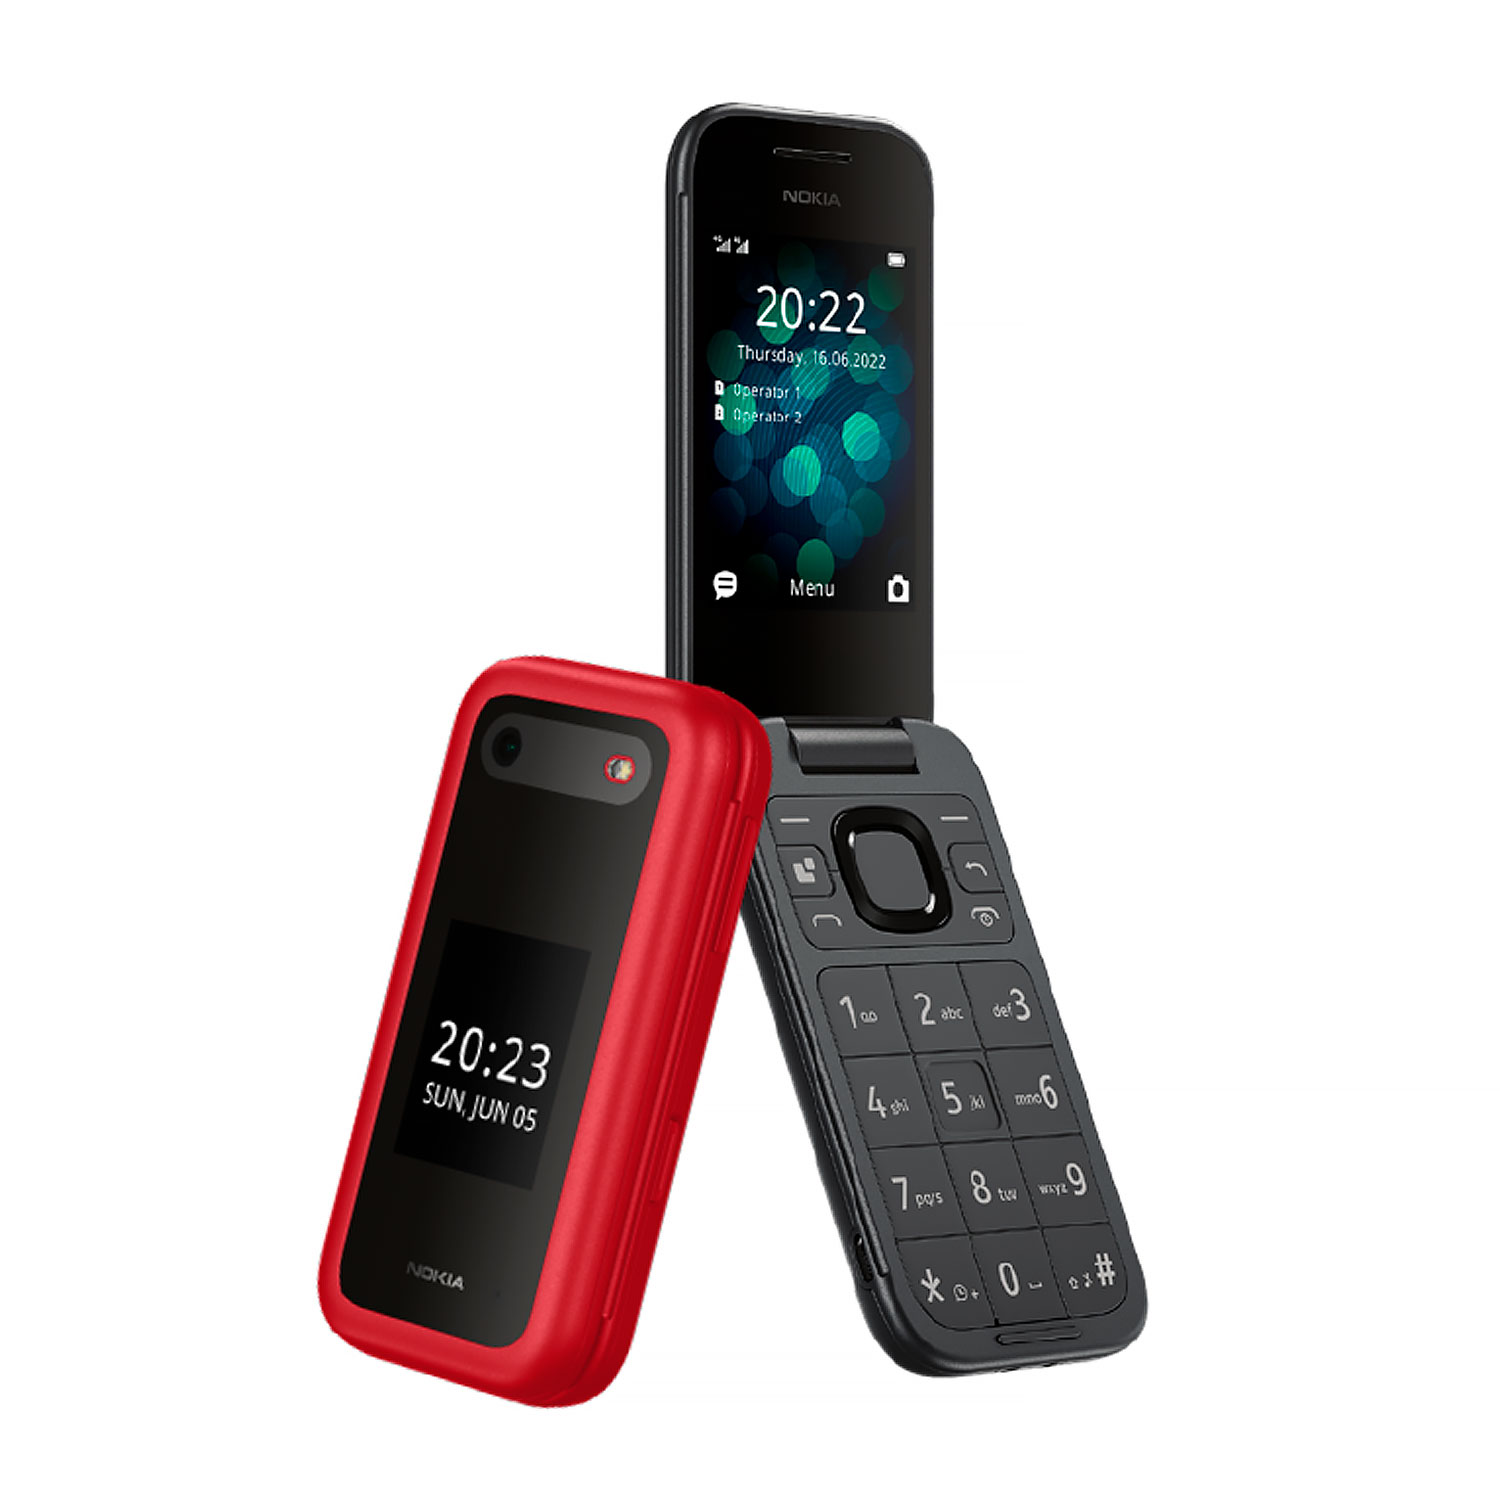 Celular Nokia Flip 2660 4G TA-1474 Dual SIM Tela 2.8" - Vermelho